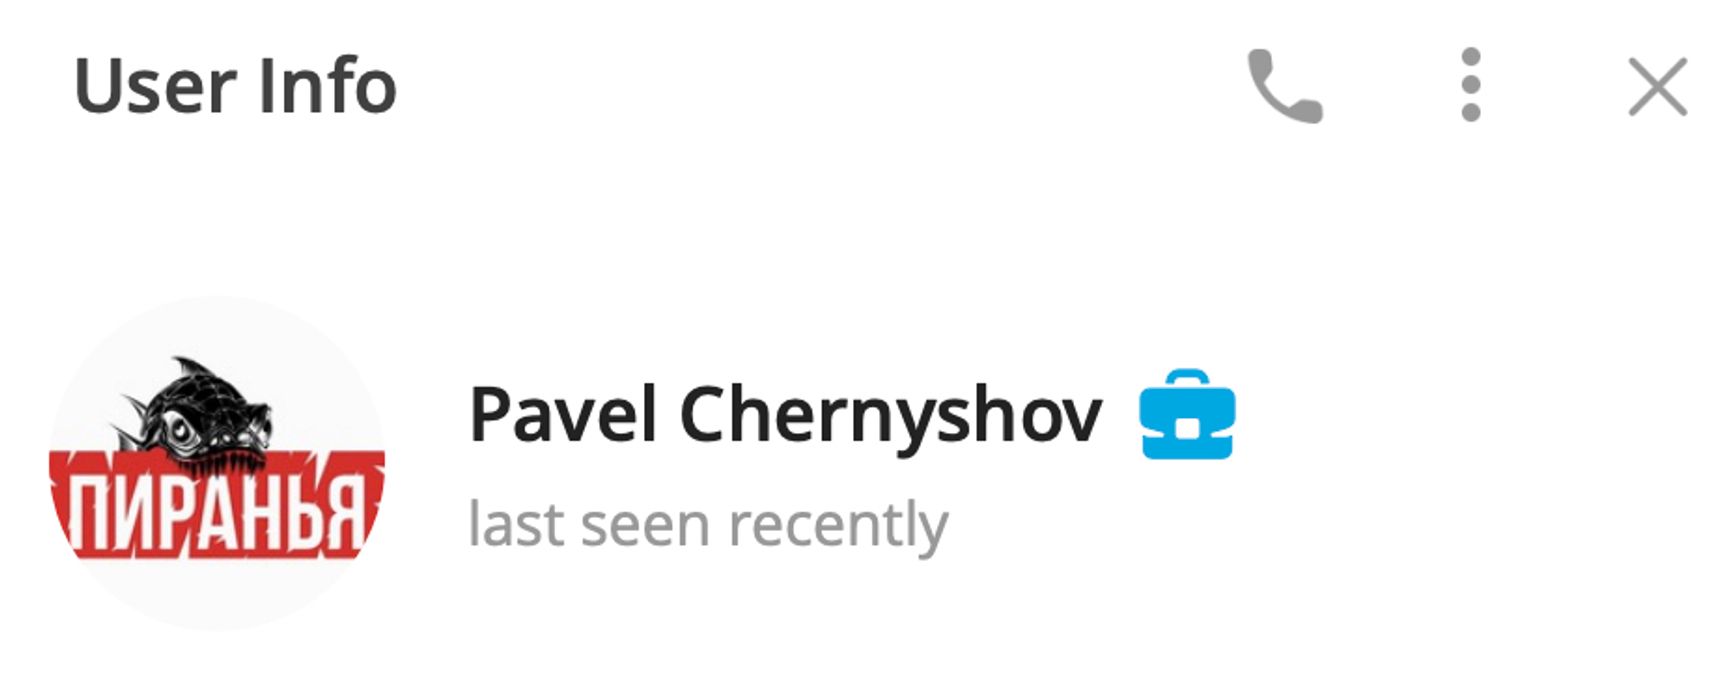 Павел Чернышов поменял аватарку в Telegram